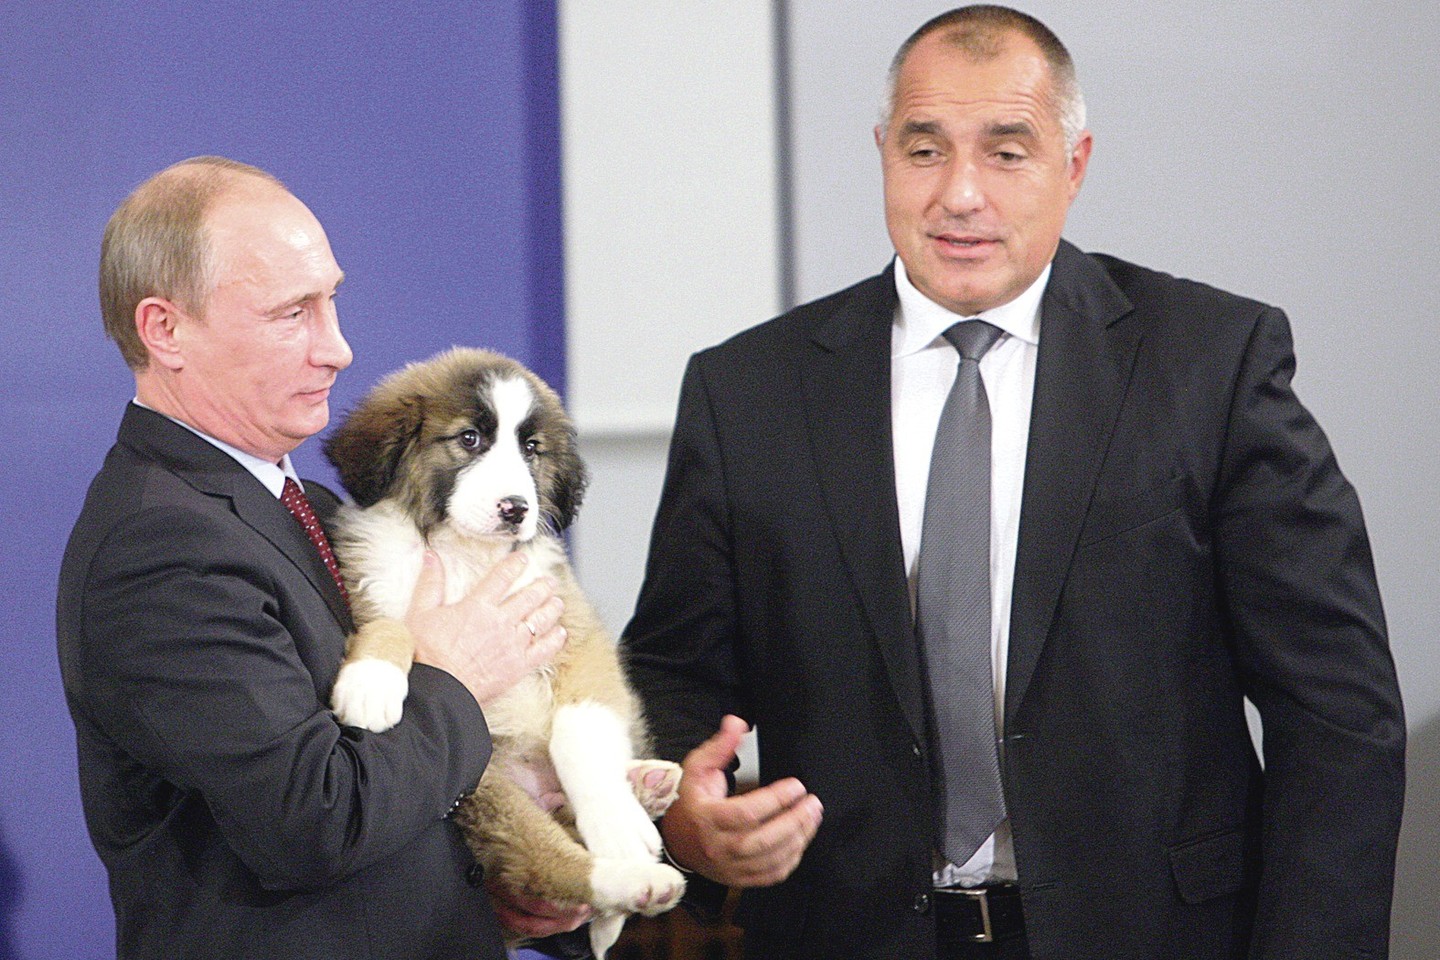 2010 metais viešėdamas Sofijoje V.Putinas, tuomet būdamas Rusijos premjeru, gavo Bulgarijos aviganį iš juos veisiančio Bulgarijos premjero B.Borisovo.<br>„Scanpix“ ir „ViDA Press“ nuotr.